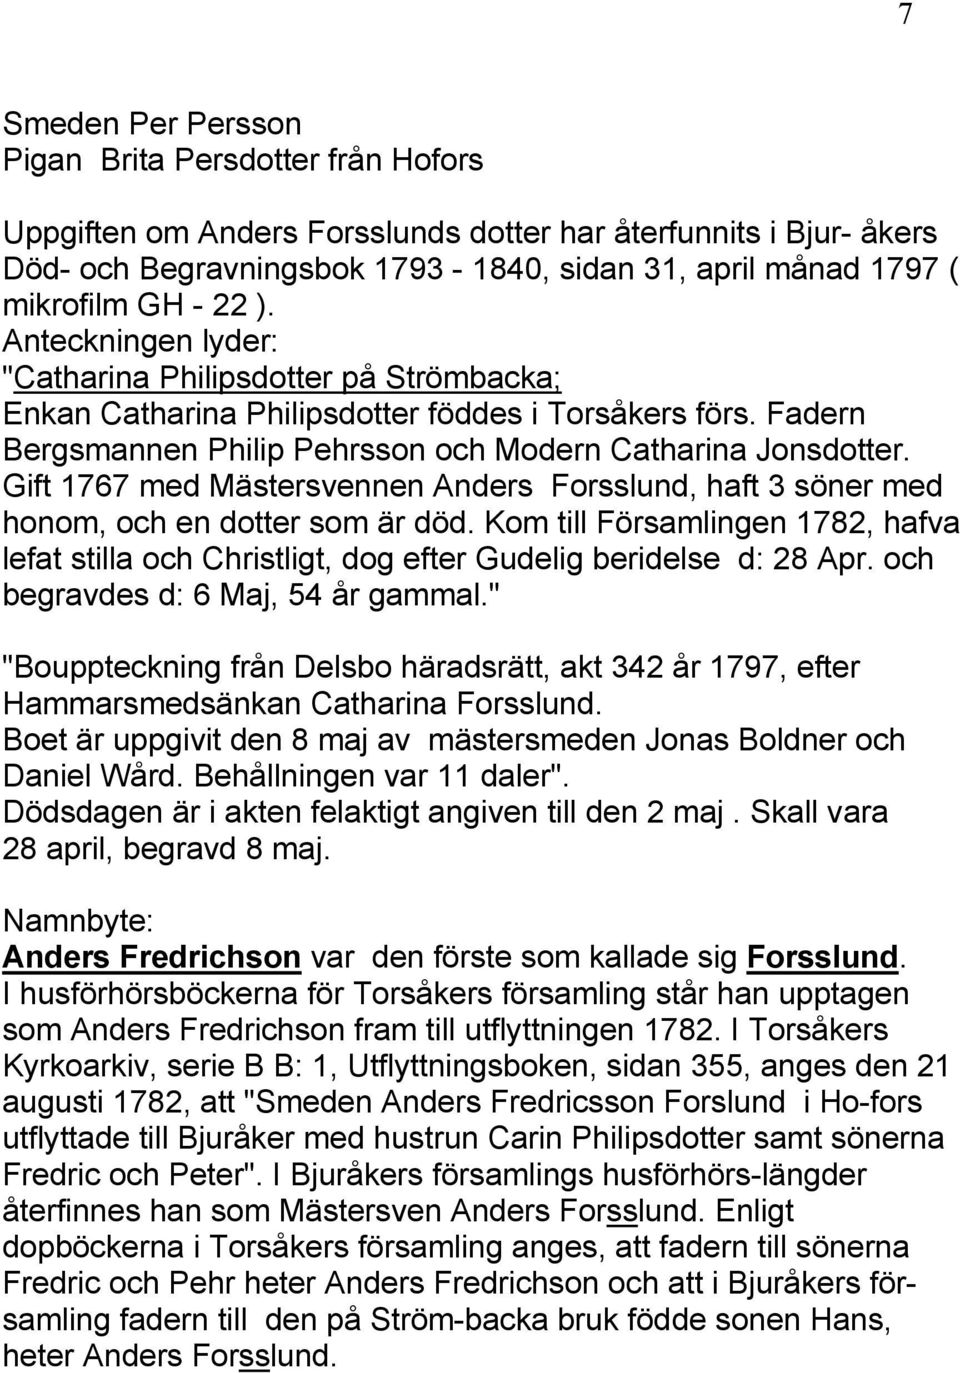 Gift 1767 med Mästersvennen Anders Forsslund, haft 3 söner med honom, och en dotter som är död. Kom till Församlingen 1782, hafva lefat stilla och Christligt, dog efter Gudelig beridelse d: 28 Apr.